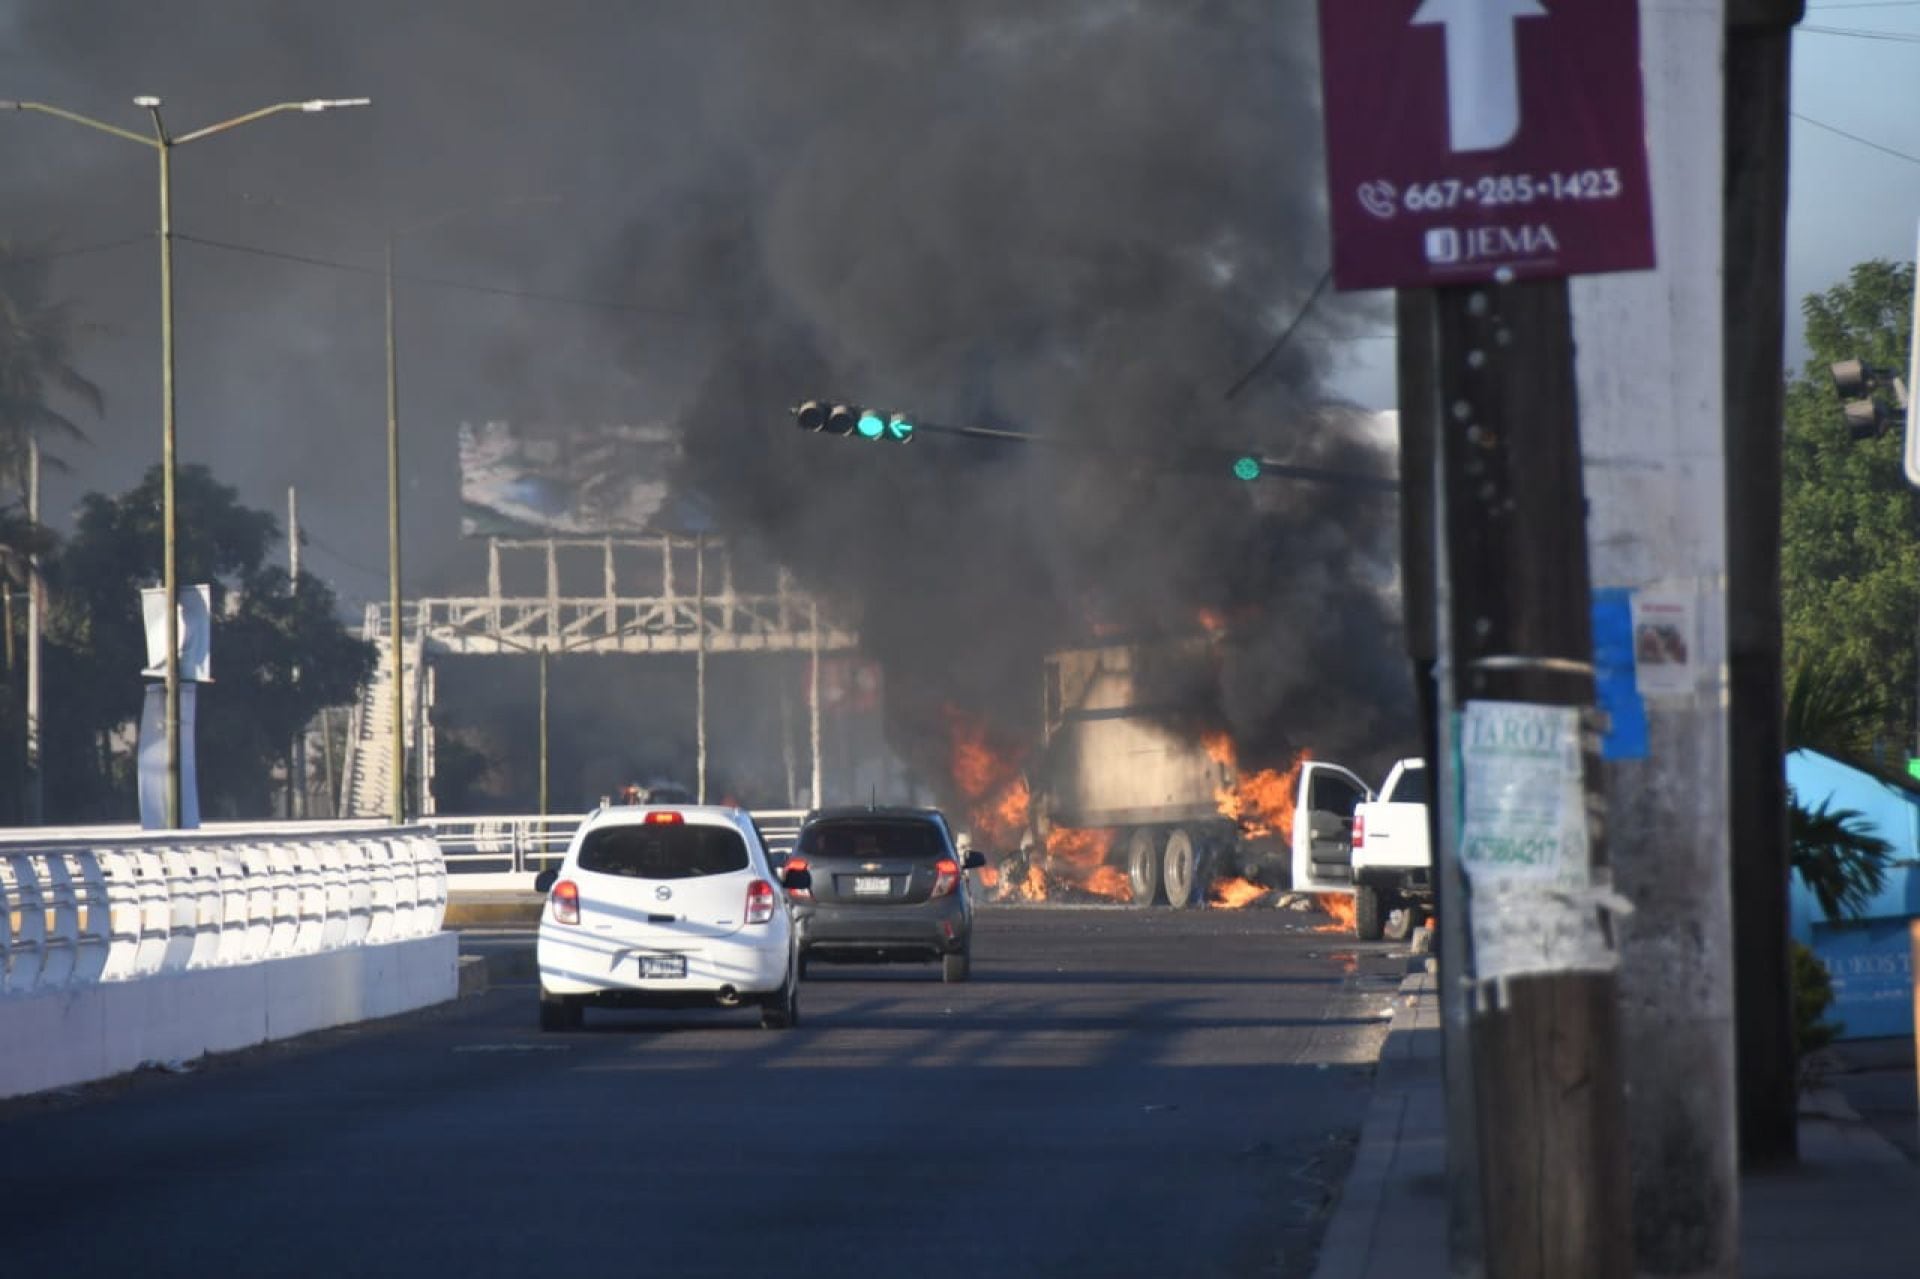 Violencia en Culiacán: AT&T, Telcel y otras se alistan ante posibles actos vandálicos